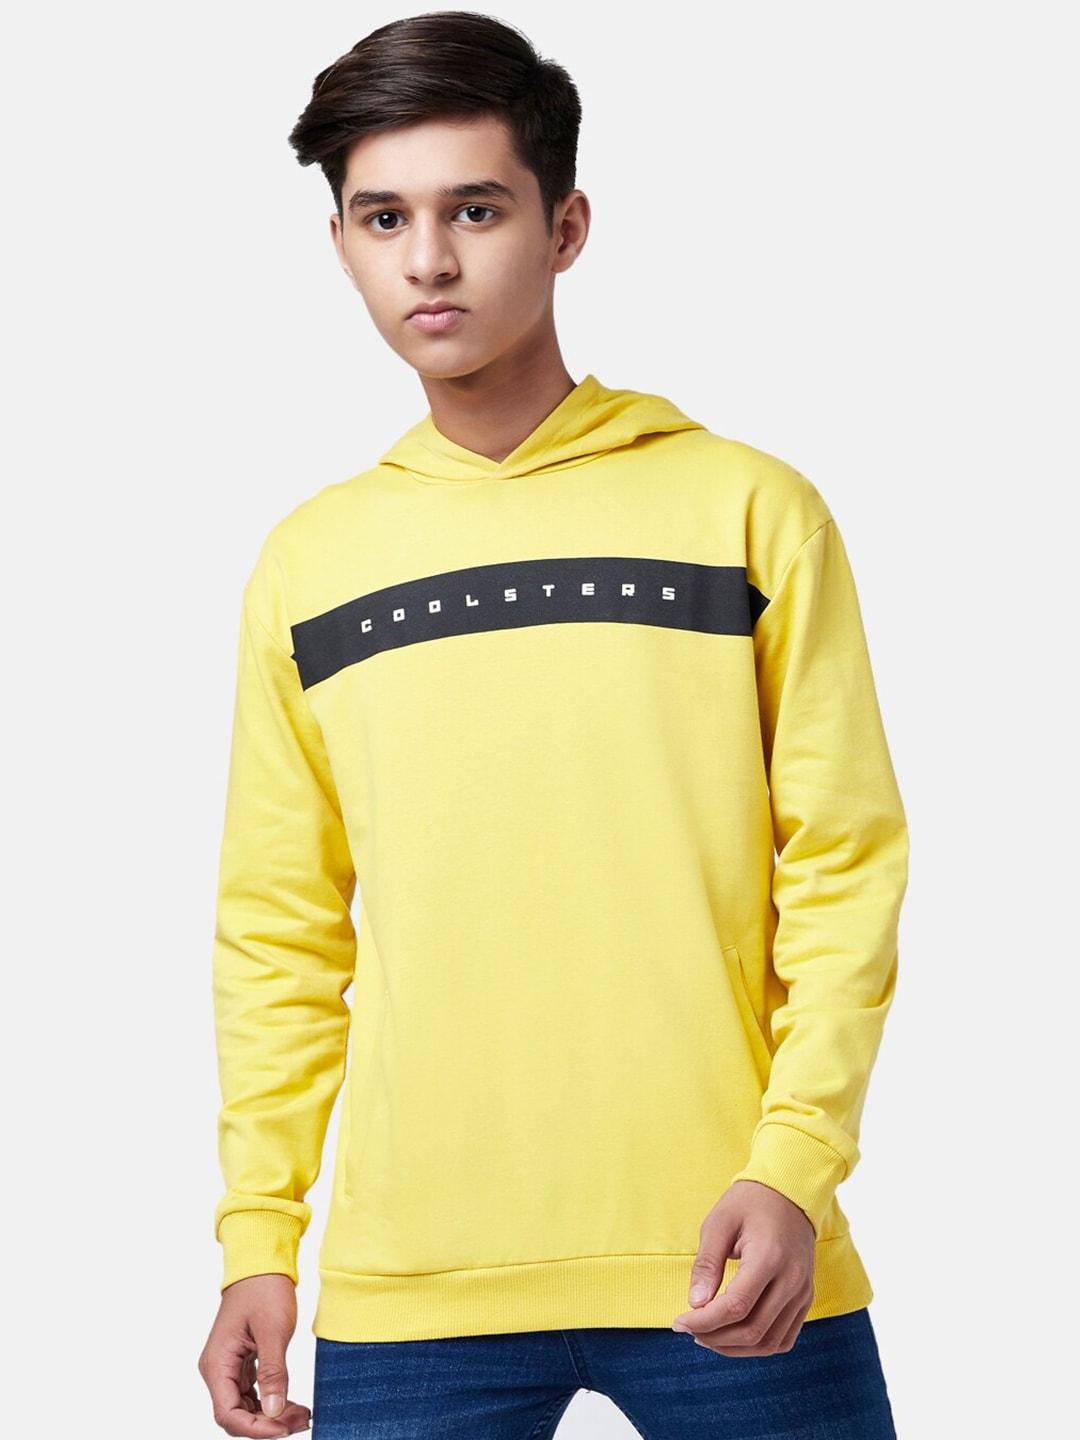 coolsters by pantaloons boys mustard printed hooded sweatshirt